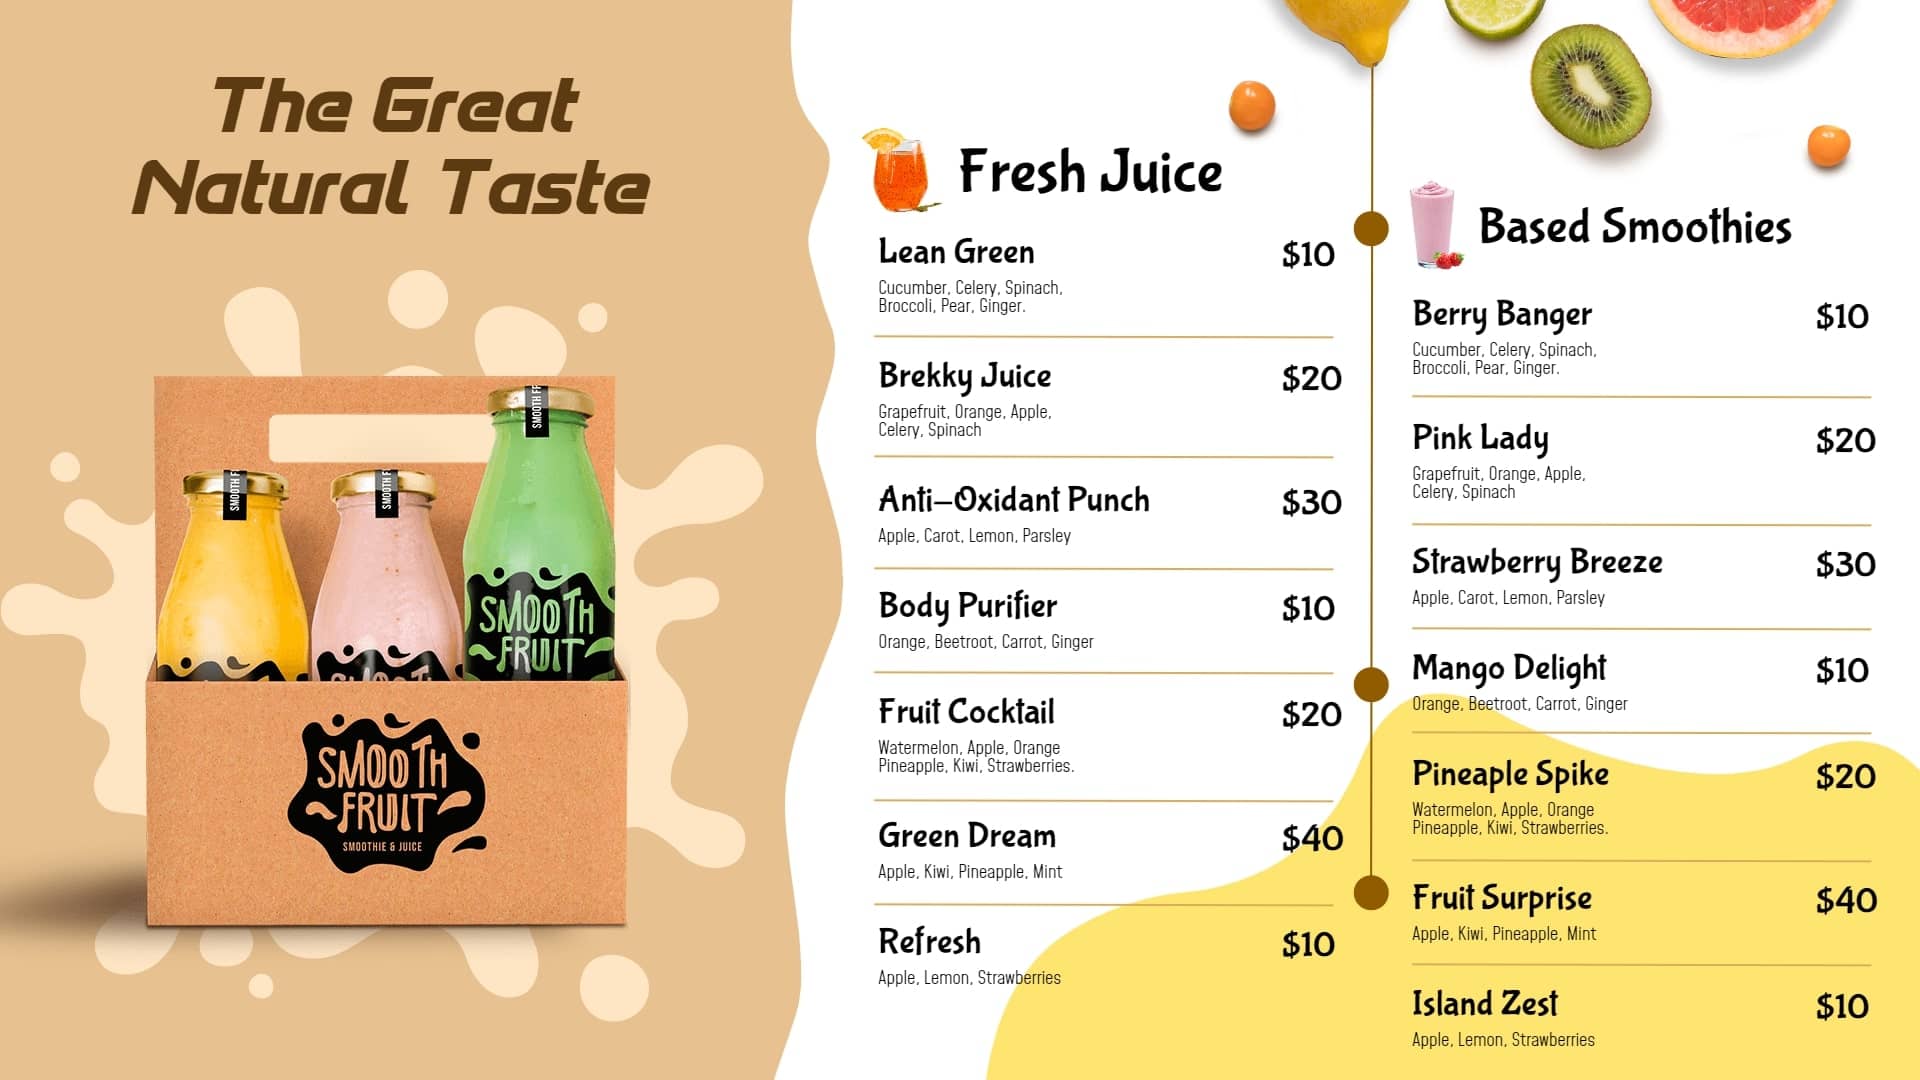 juice center menu boards template design